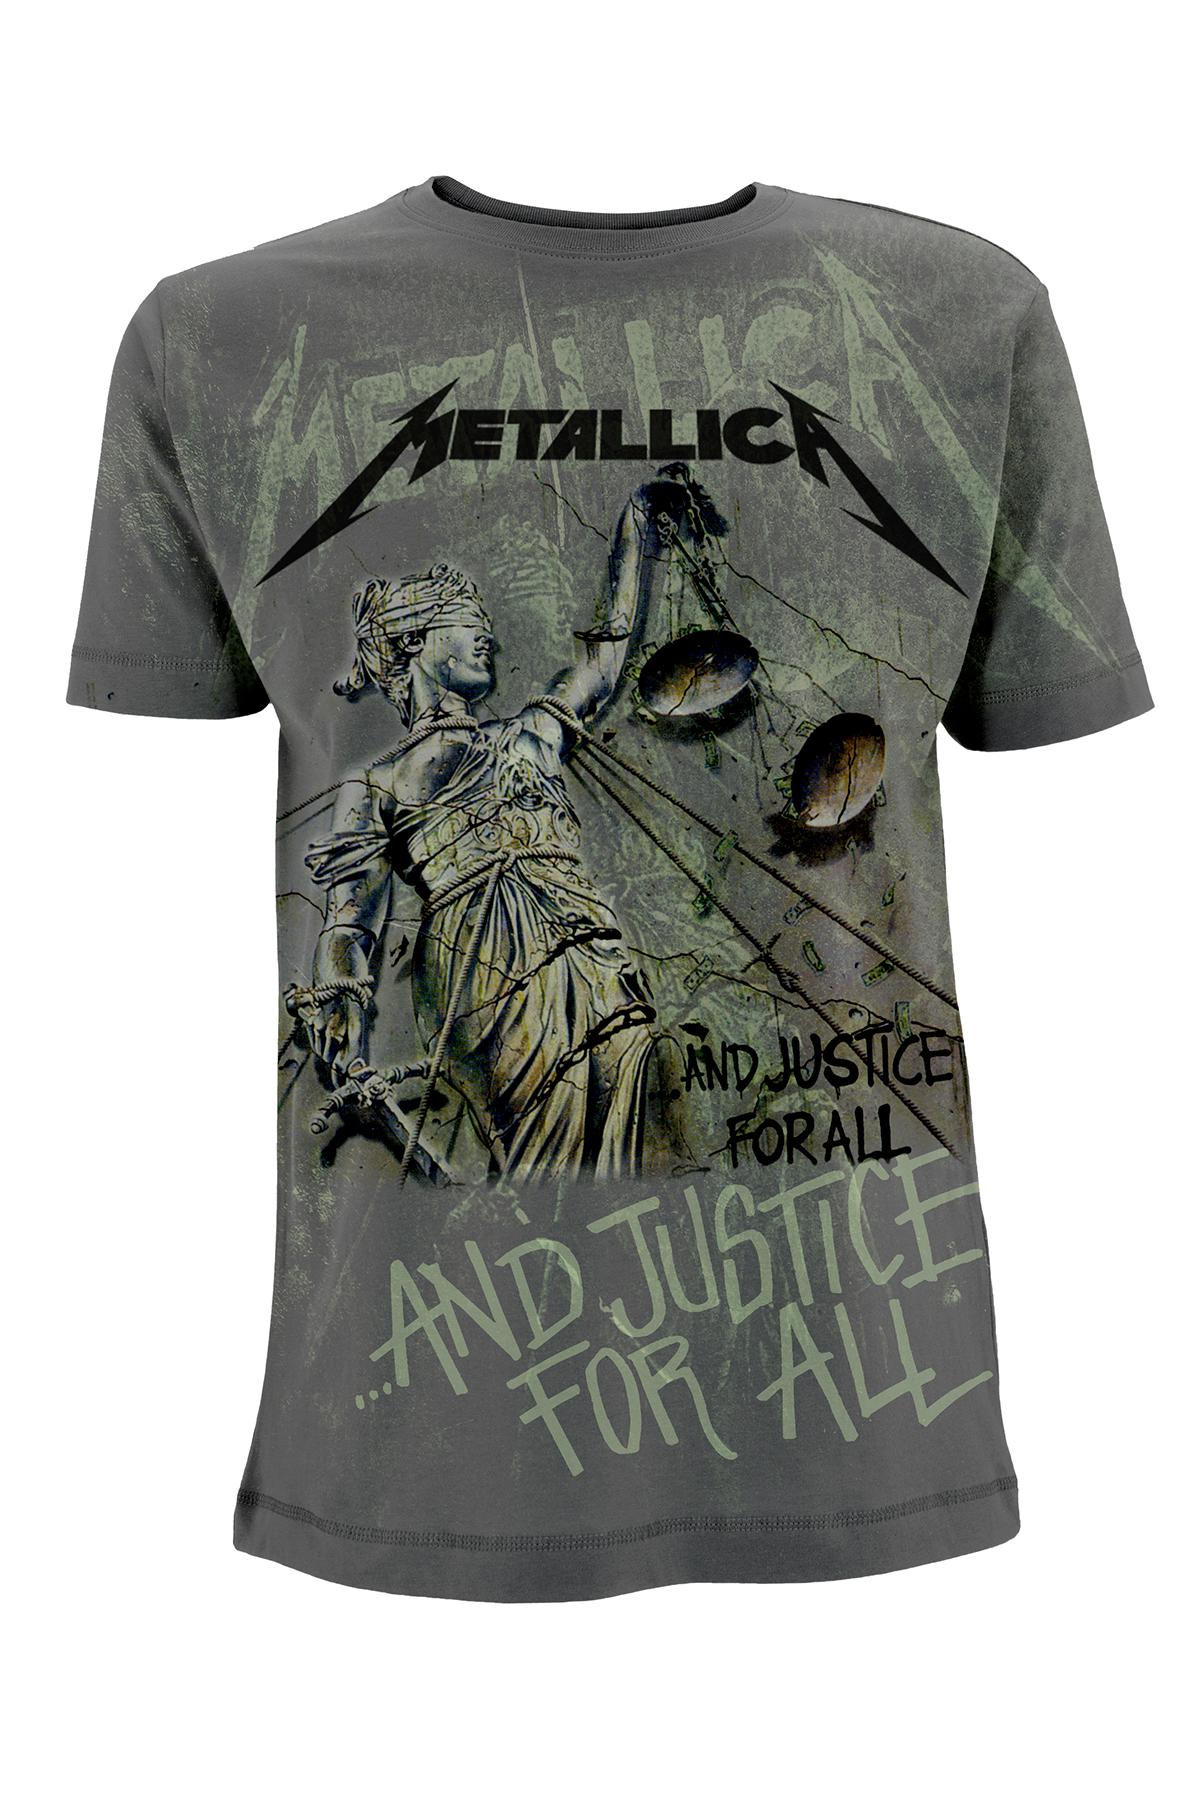 Exchange count up pronunciation Tricou gri deschis pentru barbati: Metallica - Justice Neon All Over, S -  eMAG.ro